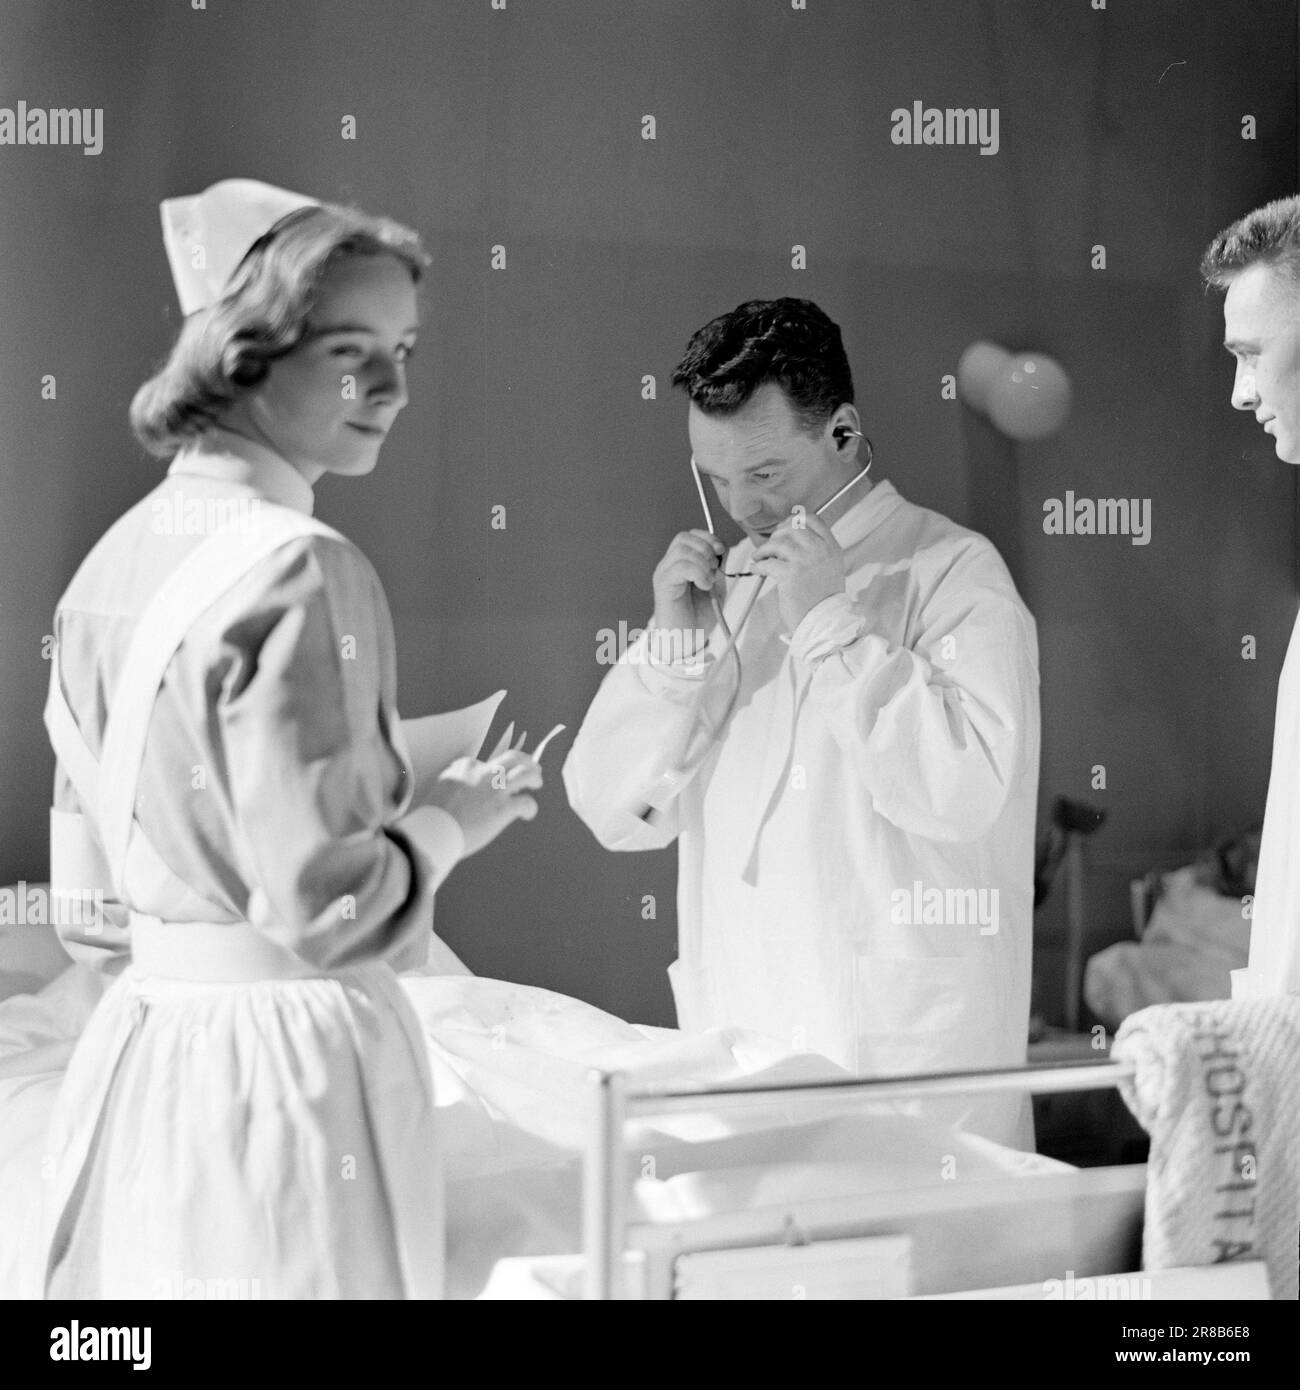 Courant 10-6-1960: Kirkvaag au film Rolf Kirkvaag a rejoint le film en tant que médecin senior dans le nouveau film d'Arne Skouen 'Omringet' - sur les journées dramatiques du major Haugland sous couvert à la clinique féminine de Rikshospitalet pendant la guerre. Knut Haugland est joué par Ivar Svendsen. Dr Kirkvaag c'était le docteur principal Bøe, puis un docteur de la réserve, qui a gardé le major Haugland caché à la clinique de femmes - et Rolf Kirkvaag a le rôle principal en tant que docteur. TV Eva Rødland photo: Ivar Aaserud / Aktuell / NTB ***PHOTO NON TRAITÉE*** Banque D'Images